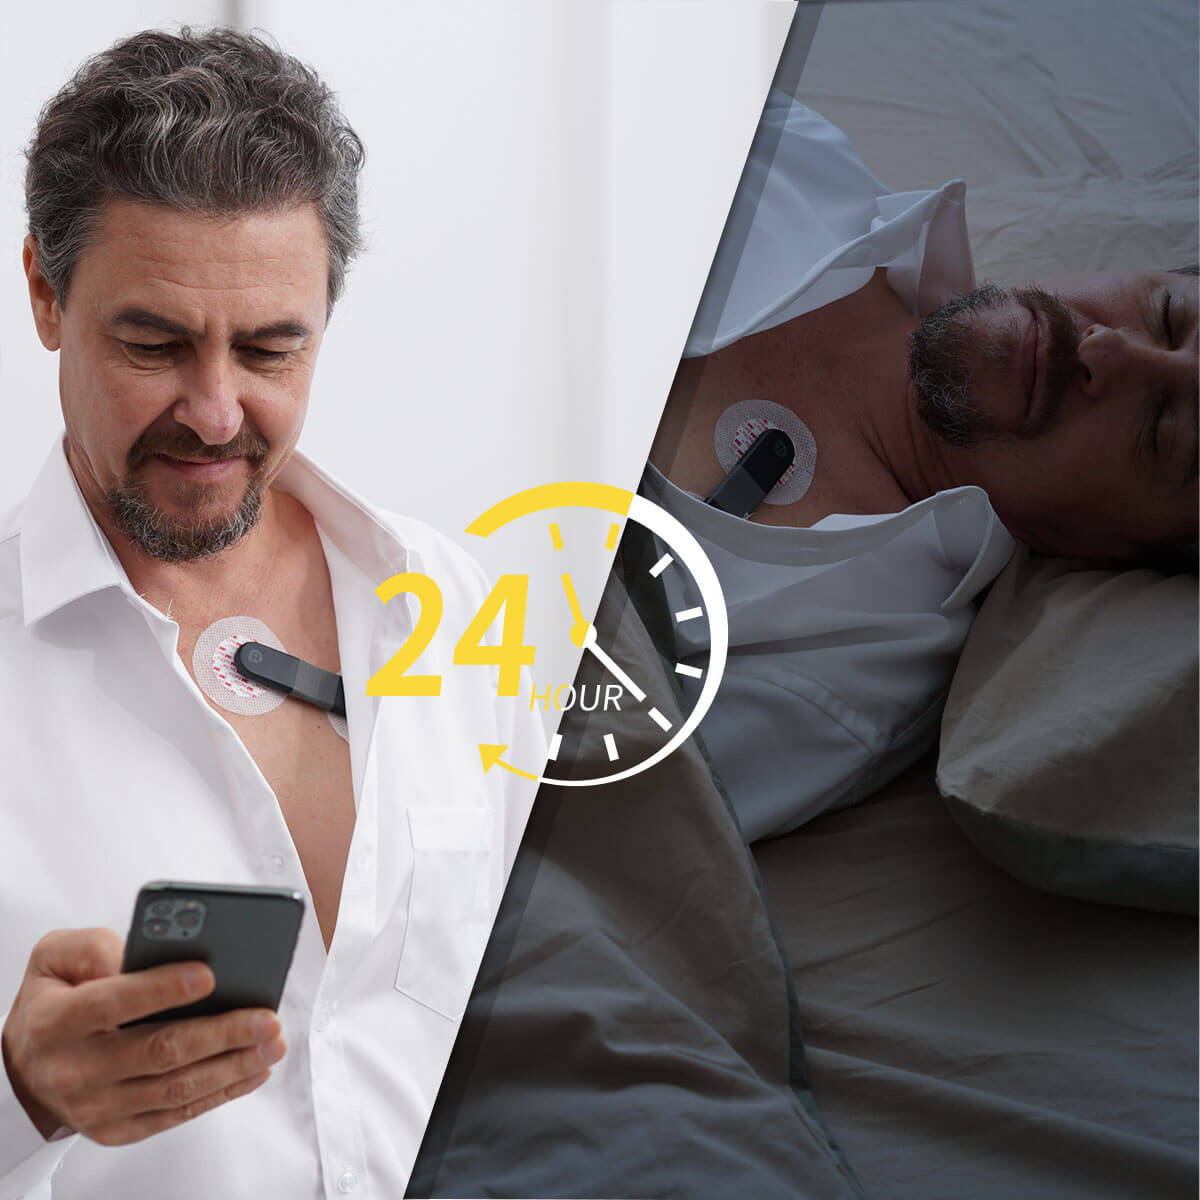 Monitor de ecg de 24 horas, monitor holter de 24 horas, monitor de salud cardíaca de 24 horas